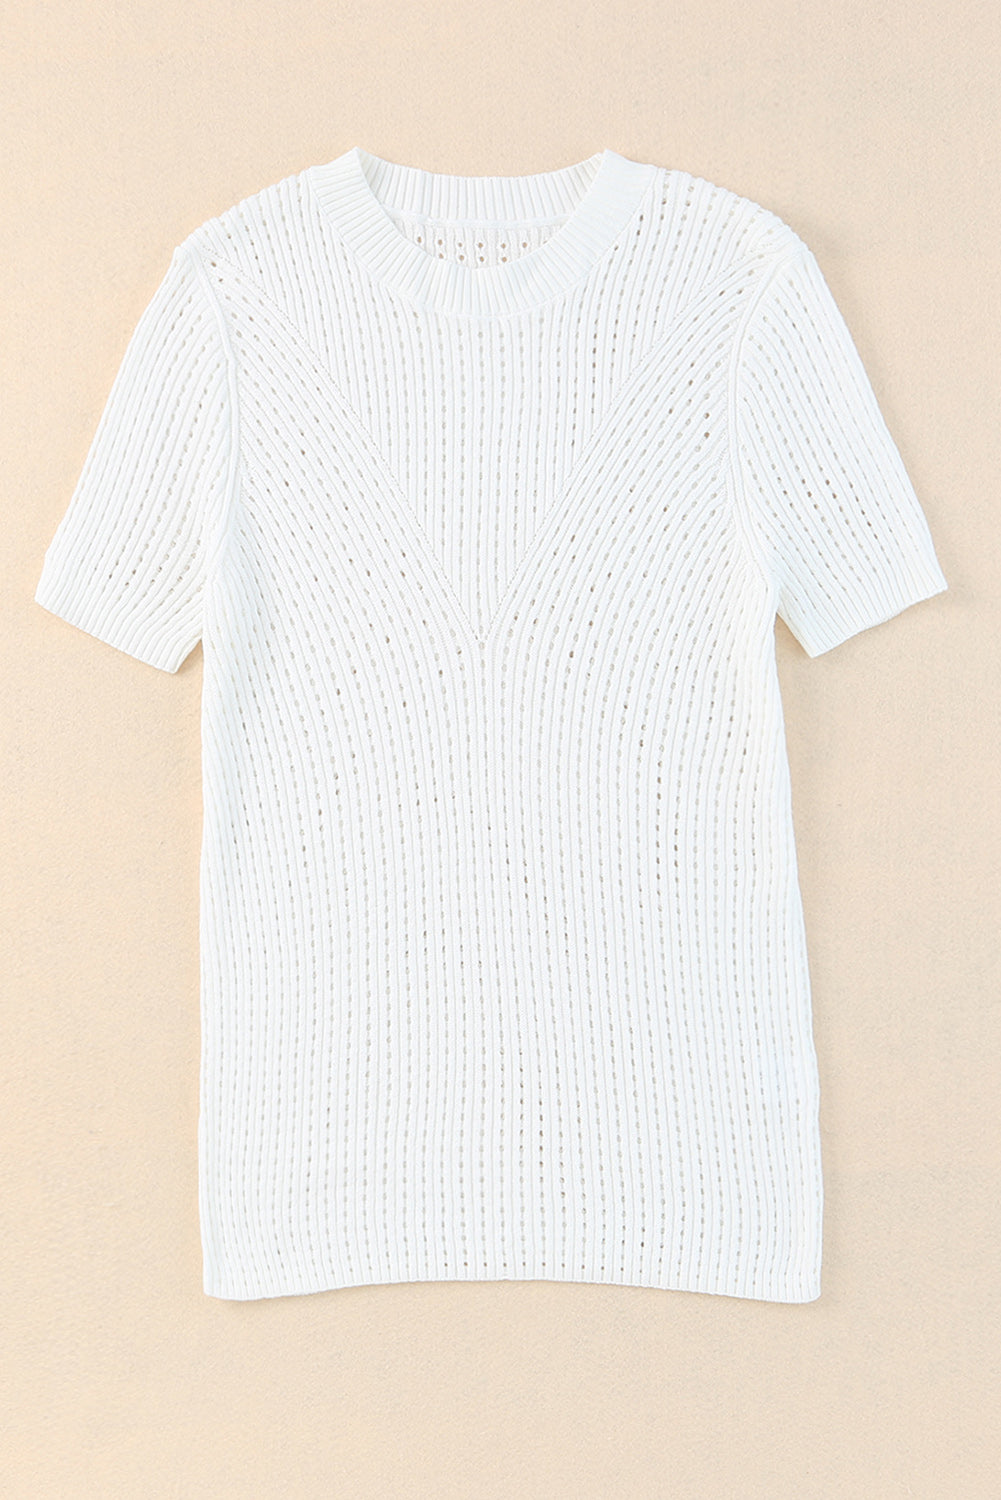 T-shirt blanc tricoté à manches courtes et ajouré